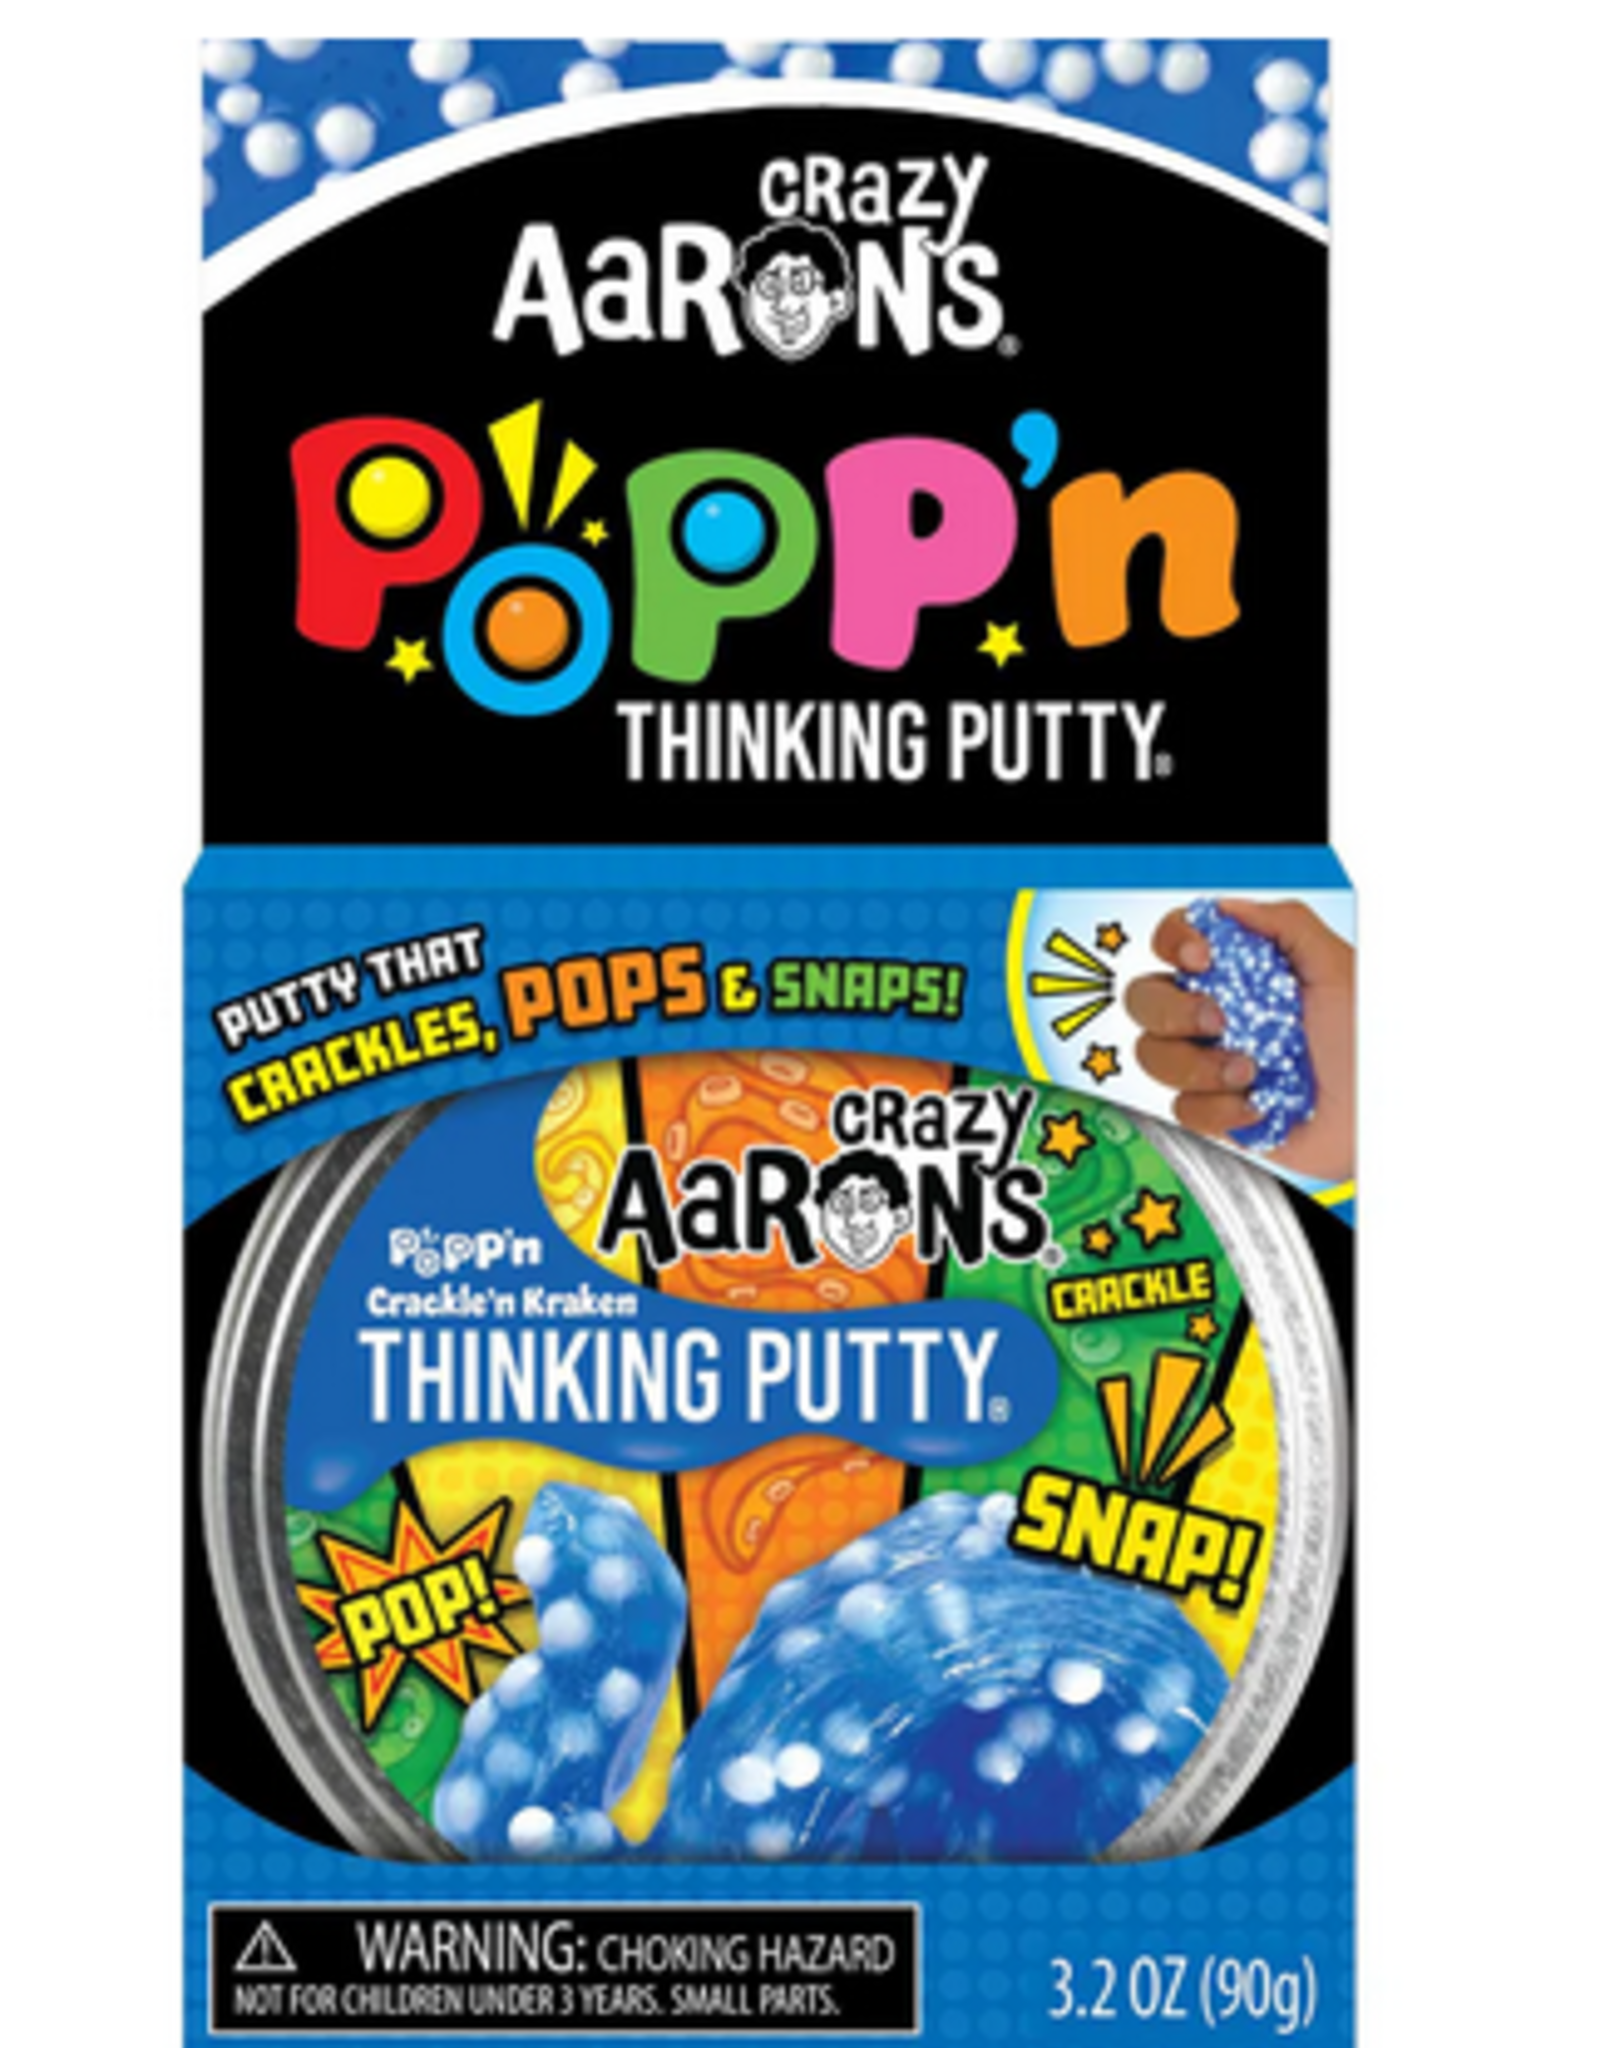 Crazy Aaron's Putty World Crackle'n Kraken - 4" Thinking  Putty Tin